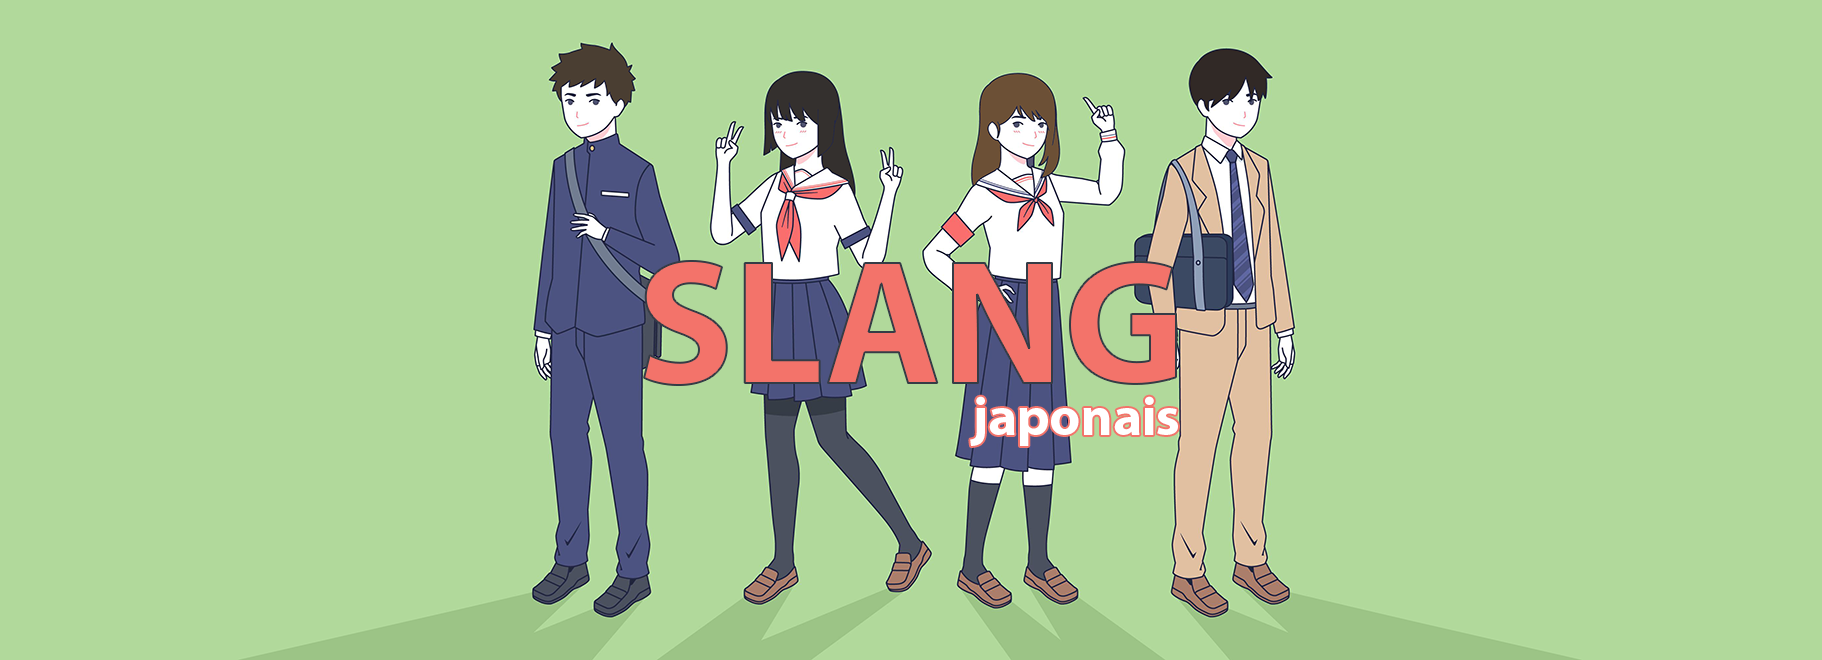 35 slang japonais language de jeune 3